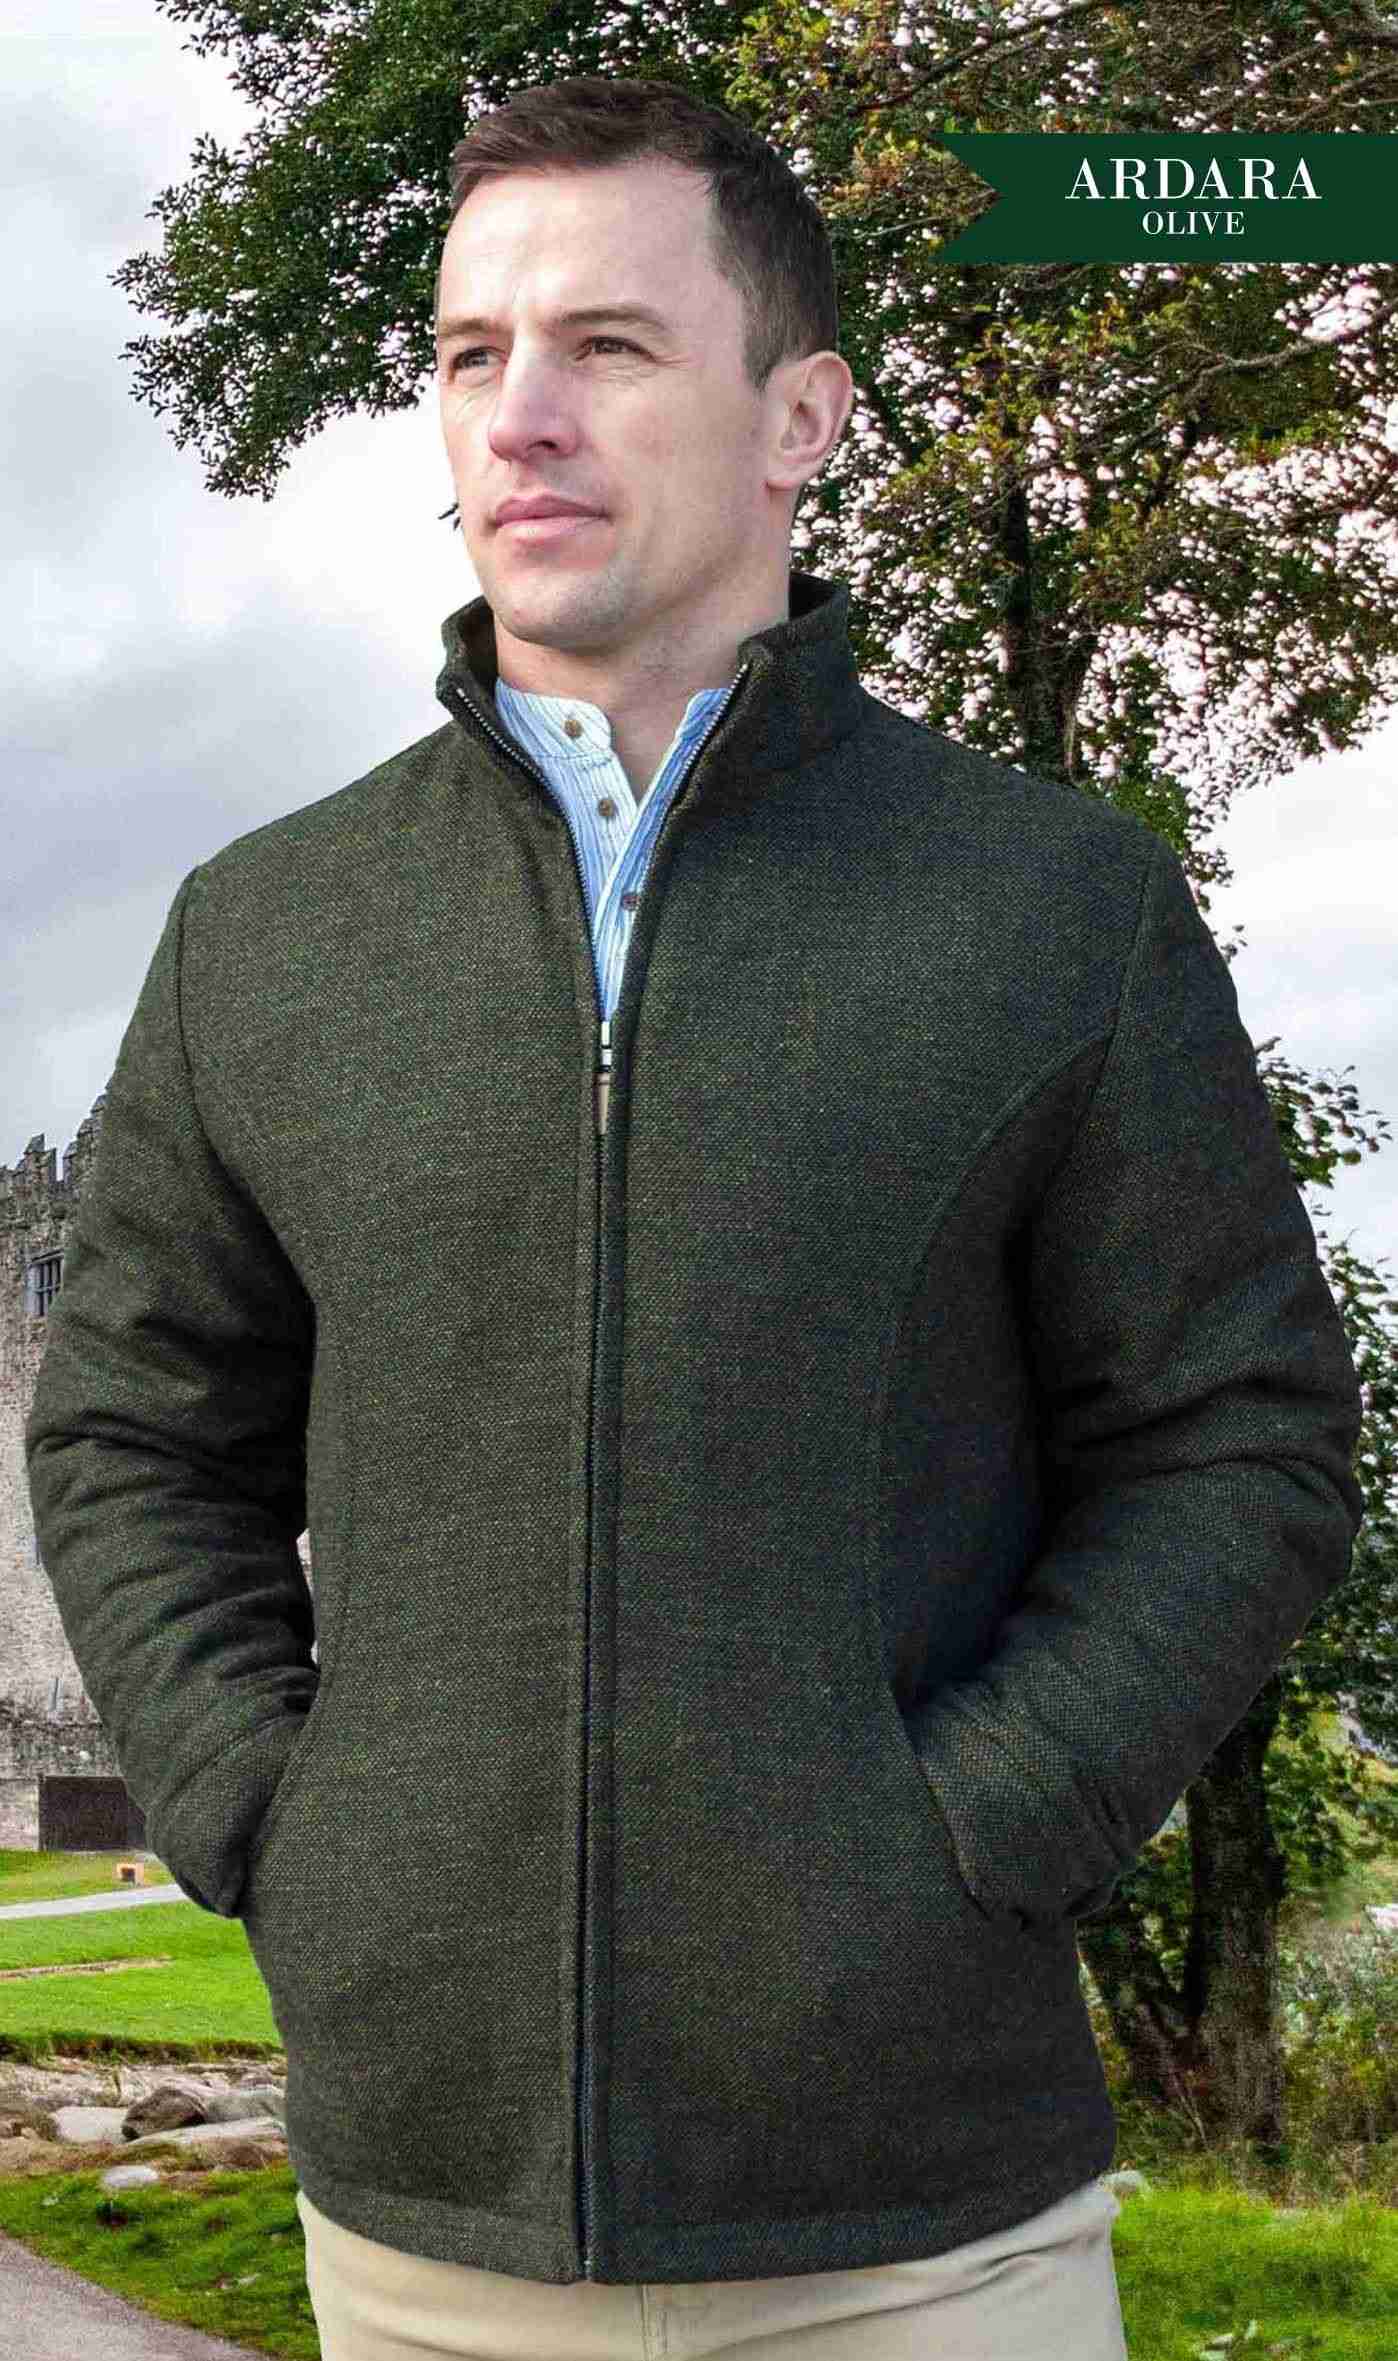 Adara Donegal Wool Tweed Jacket - Olive Tweed